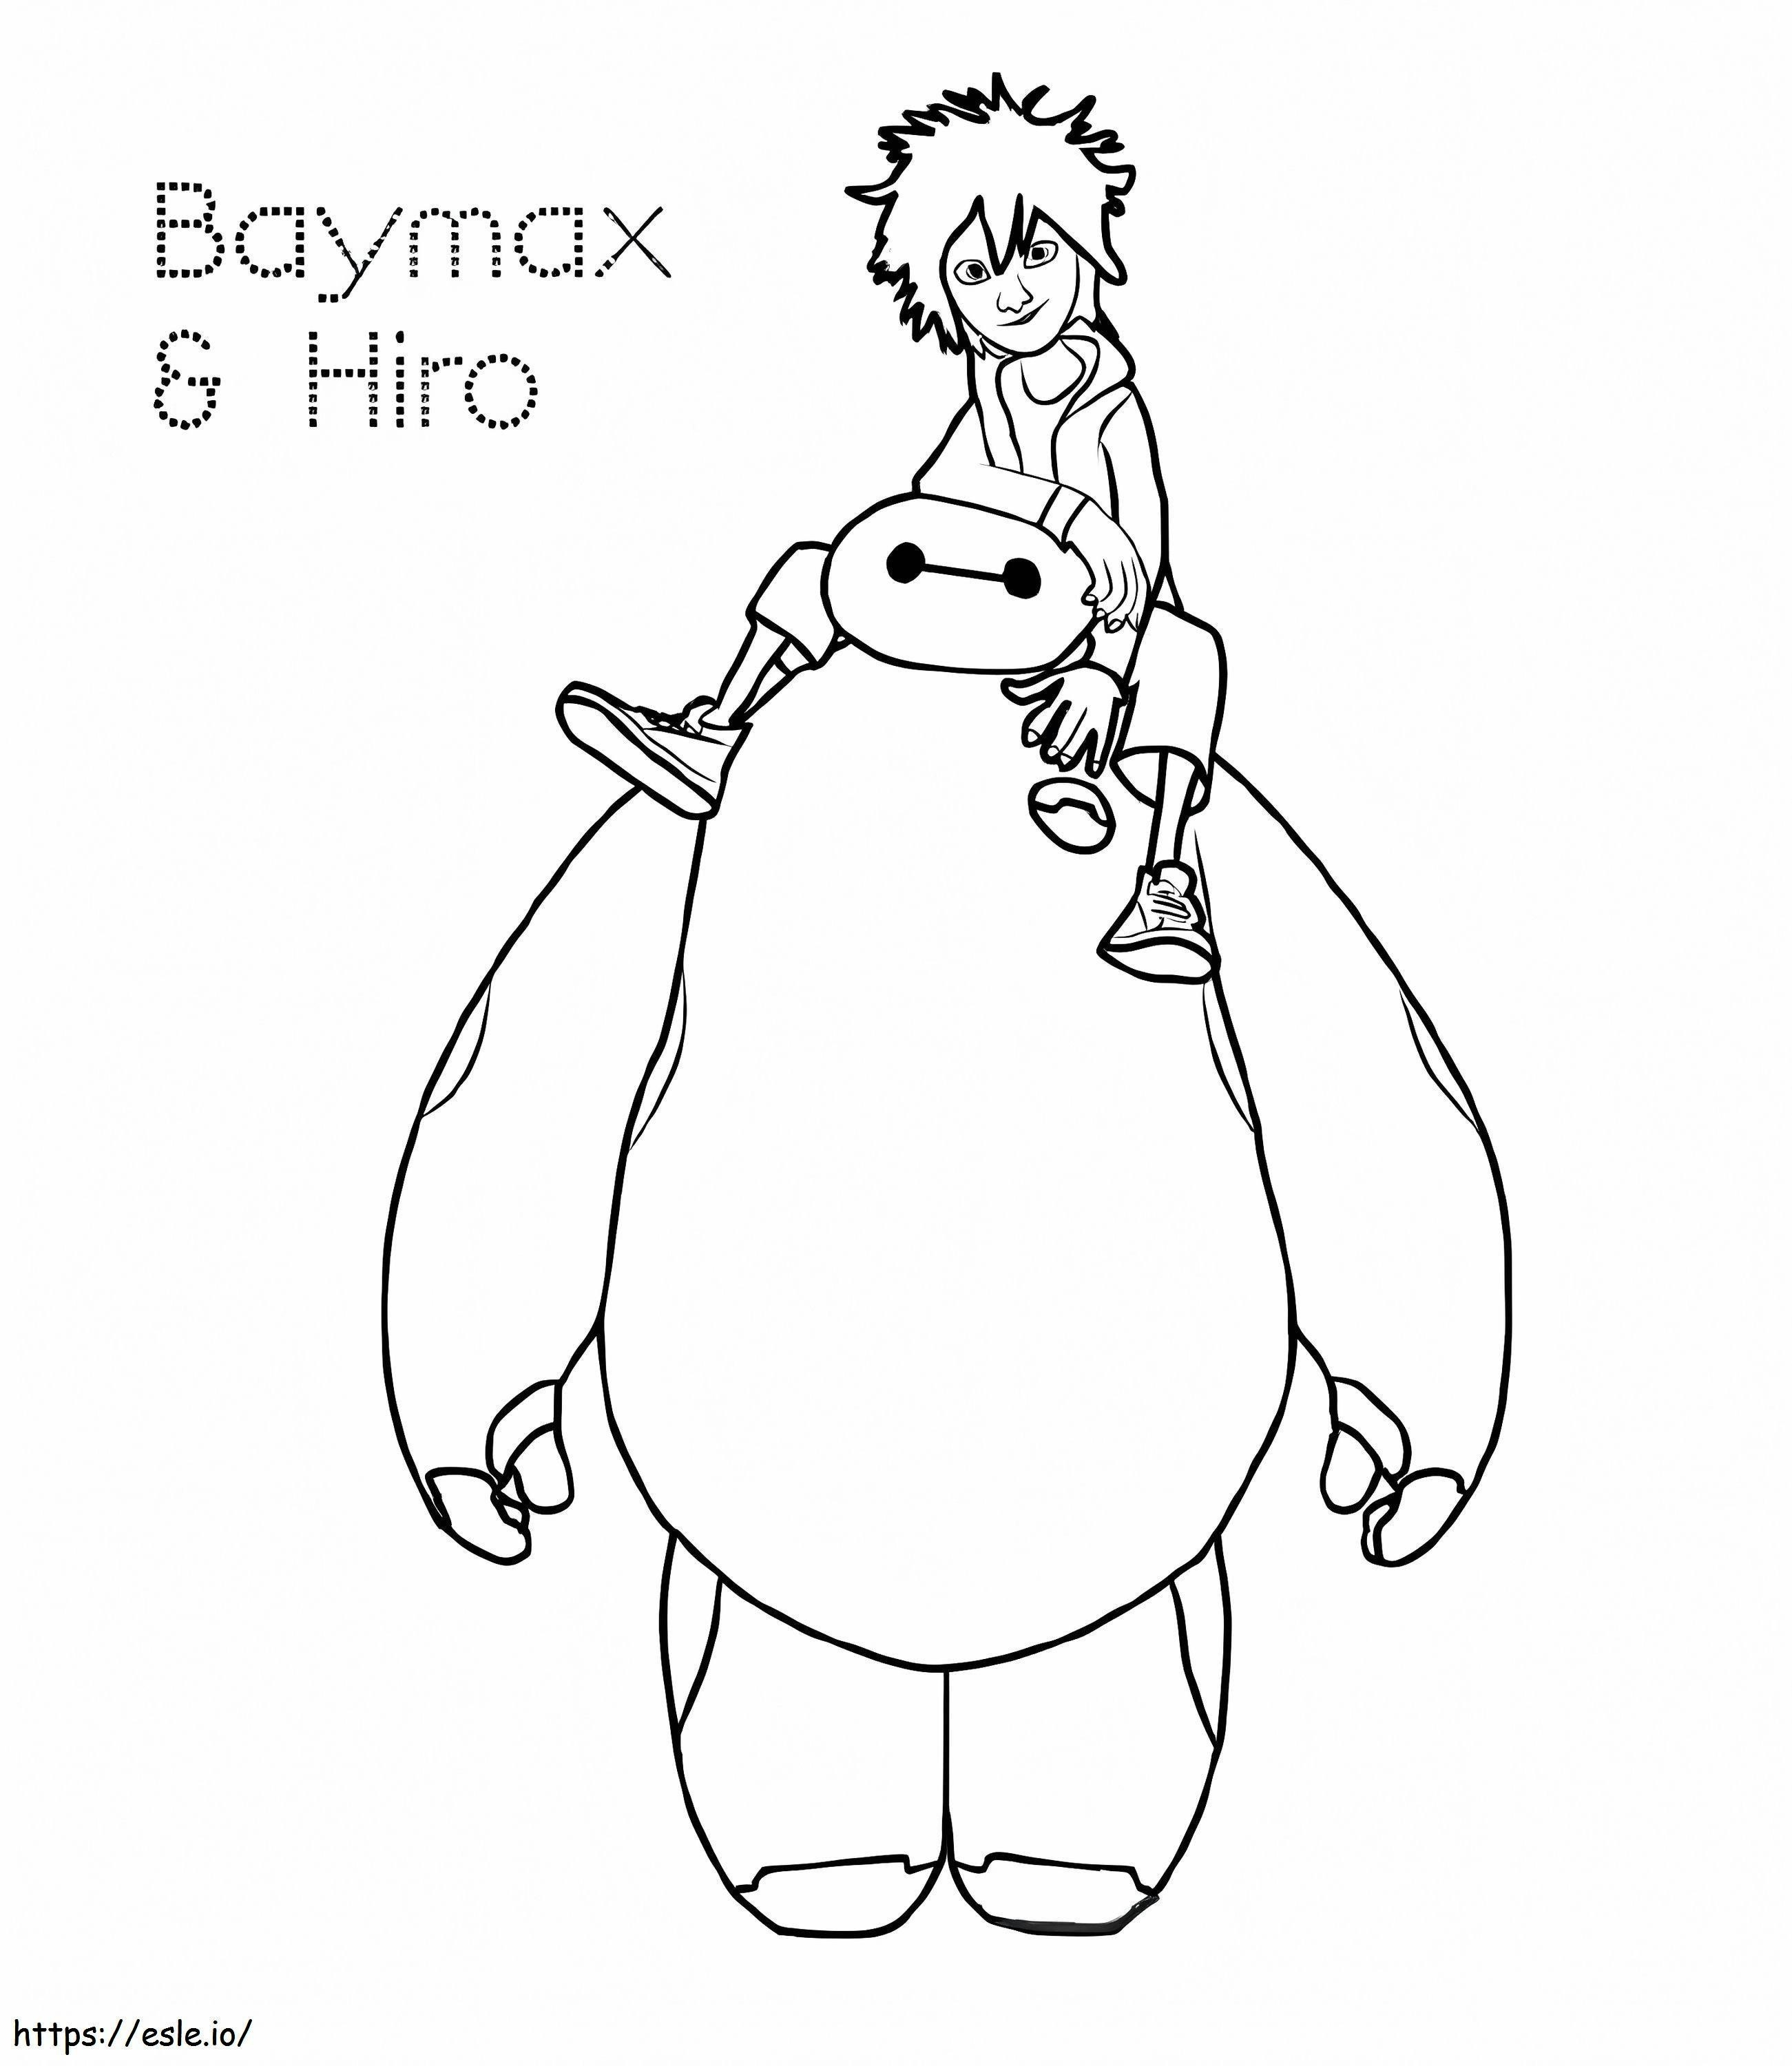 Hiro Y Baymax boyama